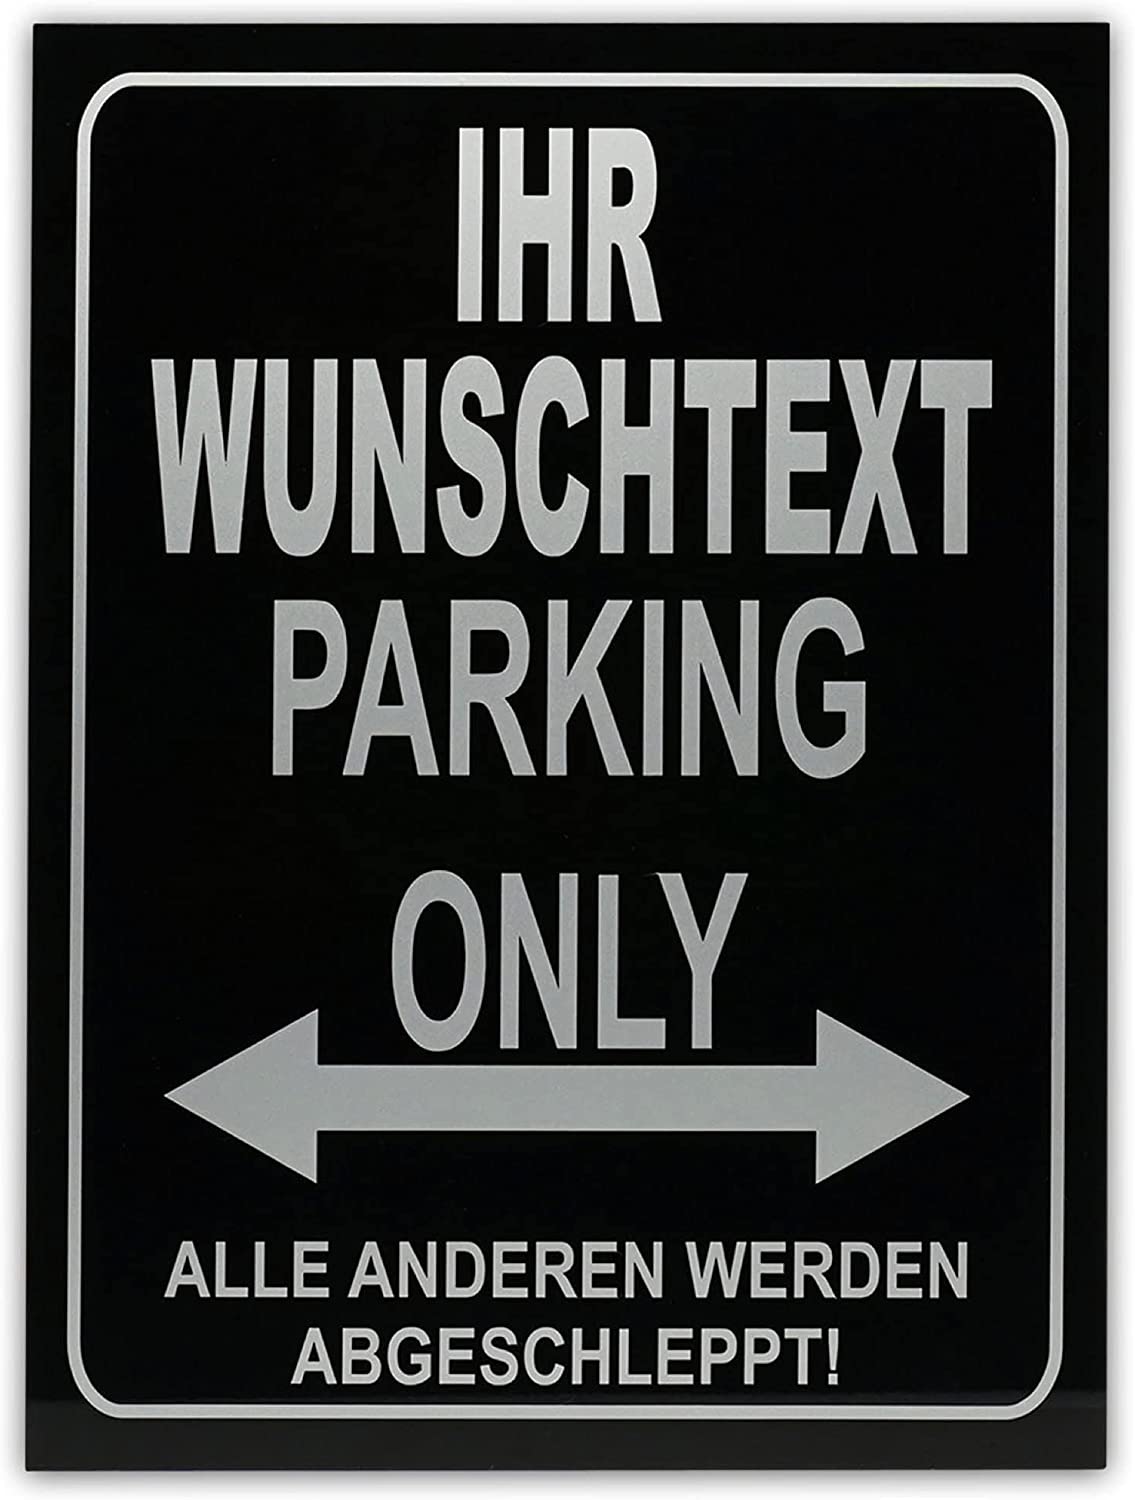 Parking Only - Parkplatzschild - Alle Anderen Werden abgeschleppt - Parkplatzschild 32x24 cm - Alu-Dibond - Individuell personalisiert